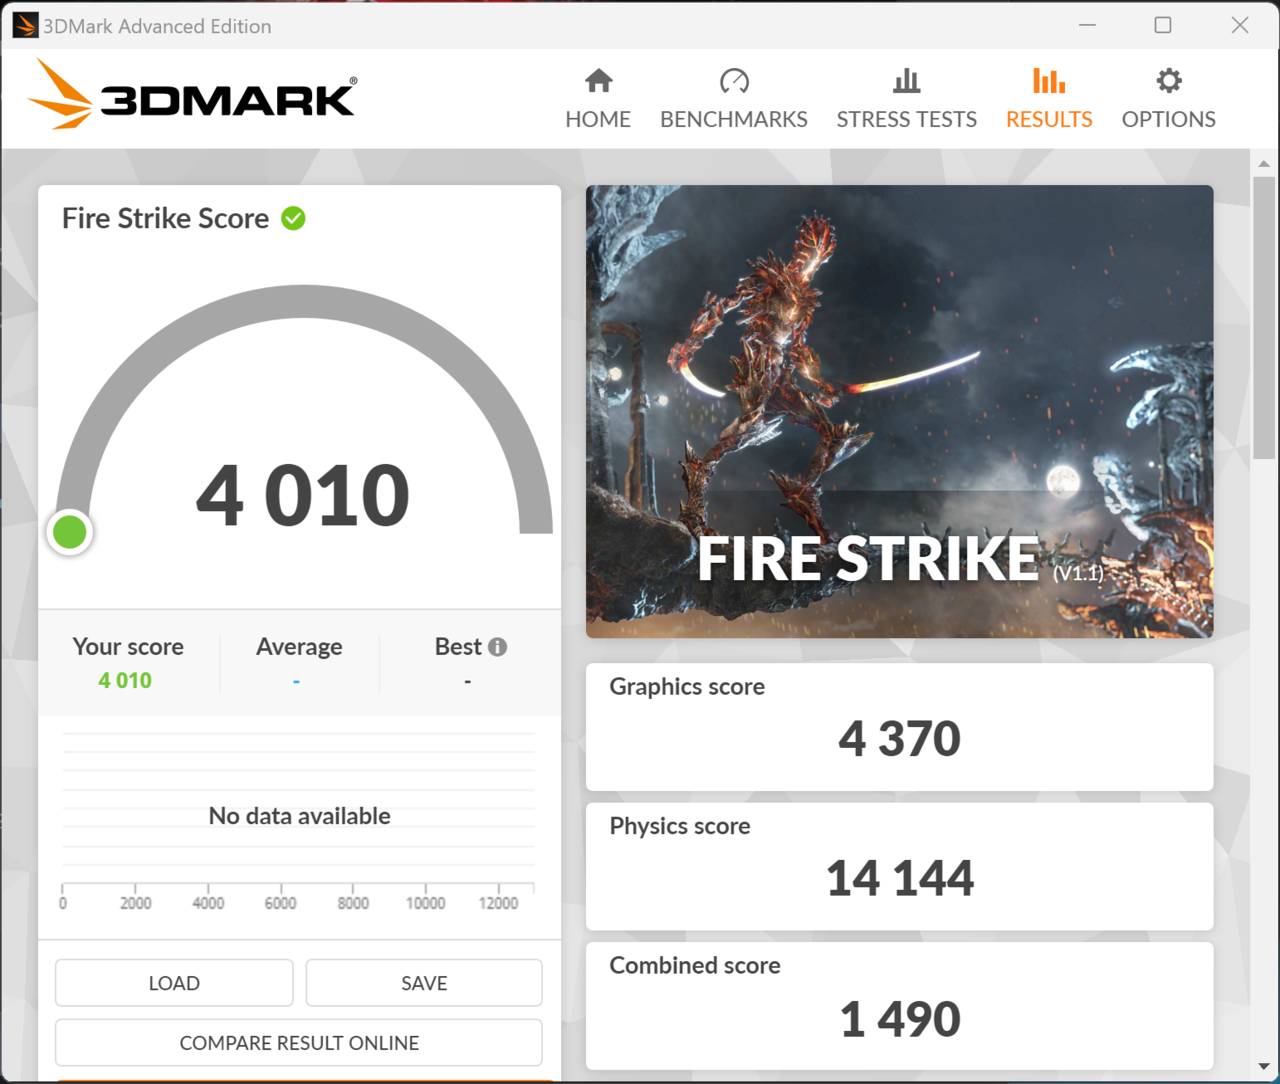 ▲ 3DMARK 파이어 스트라이크 결과다. 그래픽 스코어가 4,370점으로 측정됐다. 옵션 타협 후 온라인 게임을 그럭저럭 진행할 수 있는 수준이다